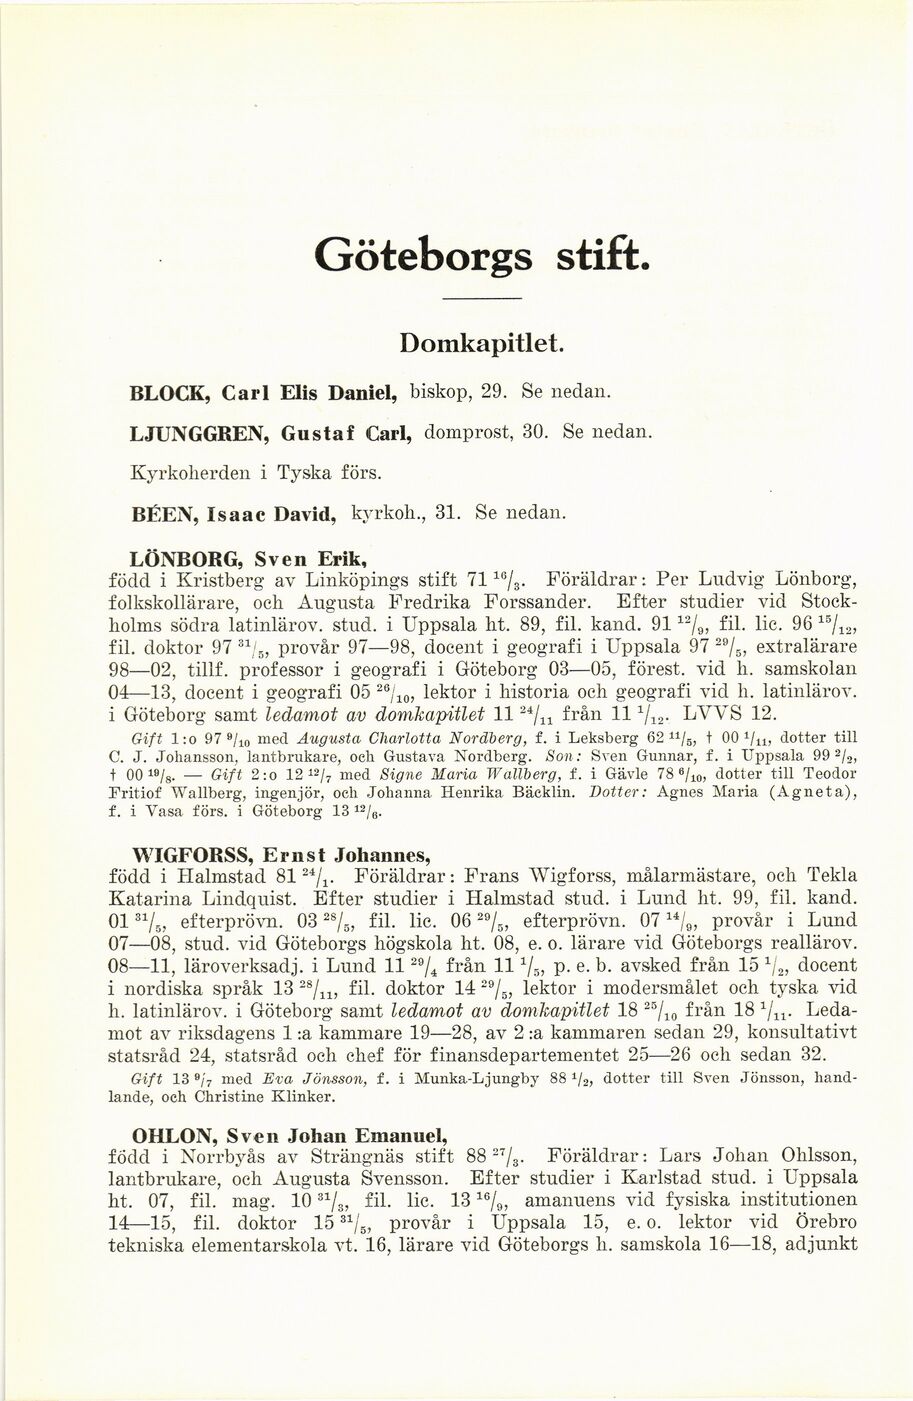 426 (Biografisk matrikel över Svenska kyrkans prästerskap / 1934)